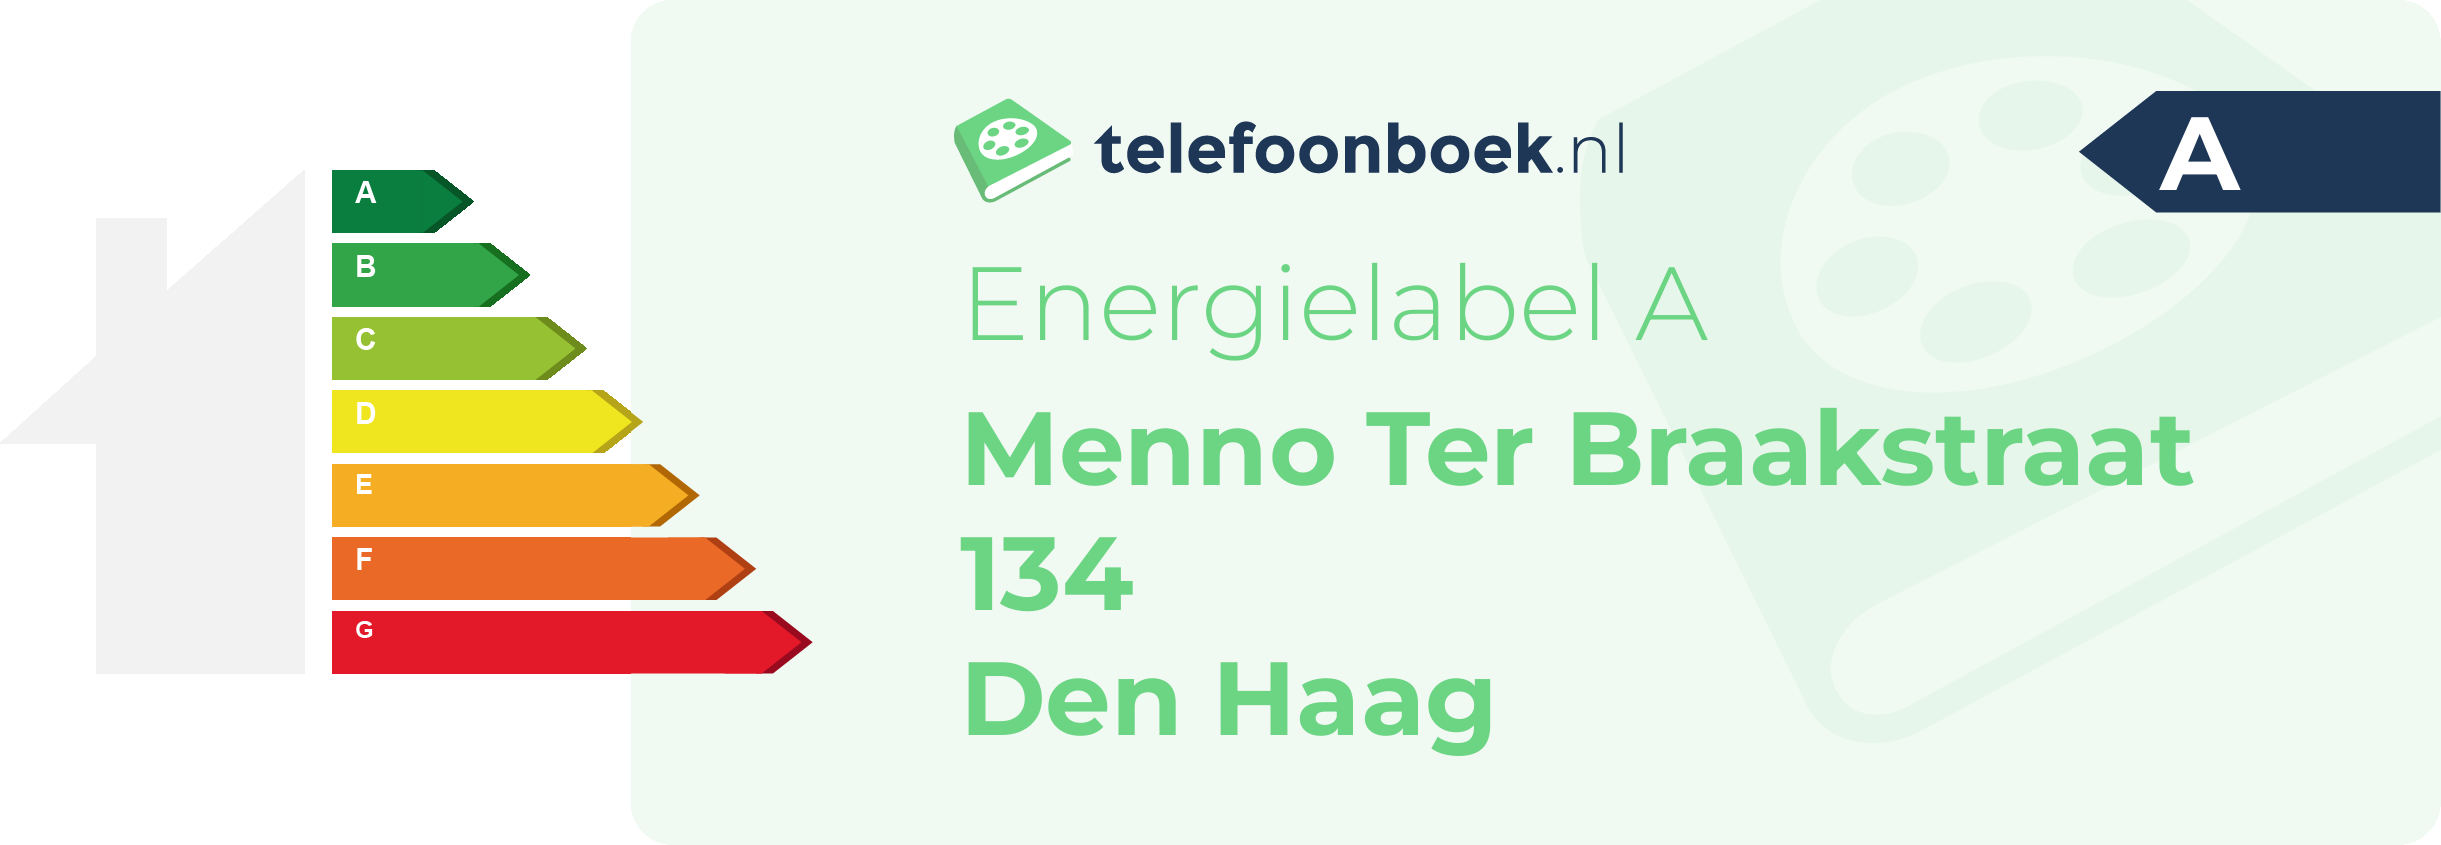 Energielabel Menno Ter Braakstraat 134 Den Haag